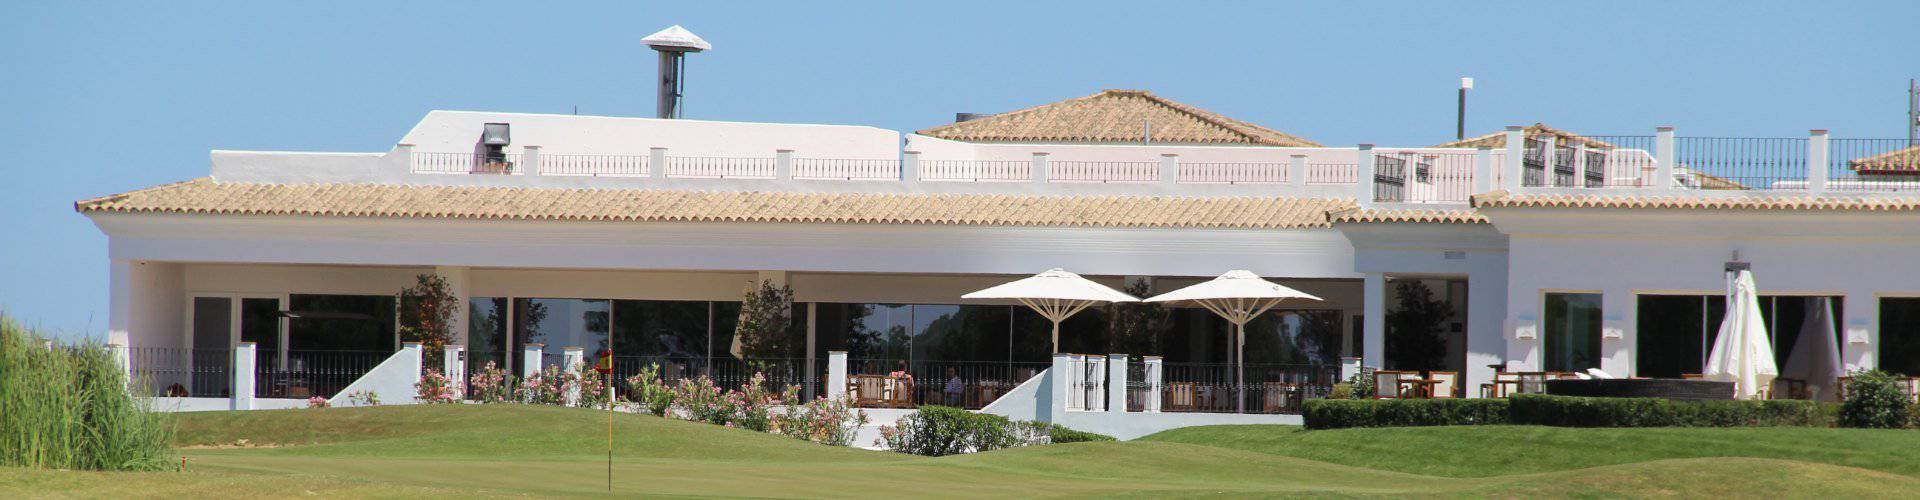 Fairplay Golf Fairplay Golf & Spa Resort - Casas Viejas (Benalup) - 